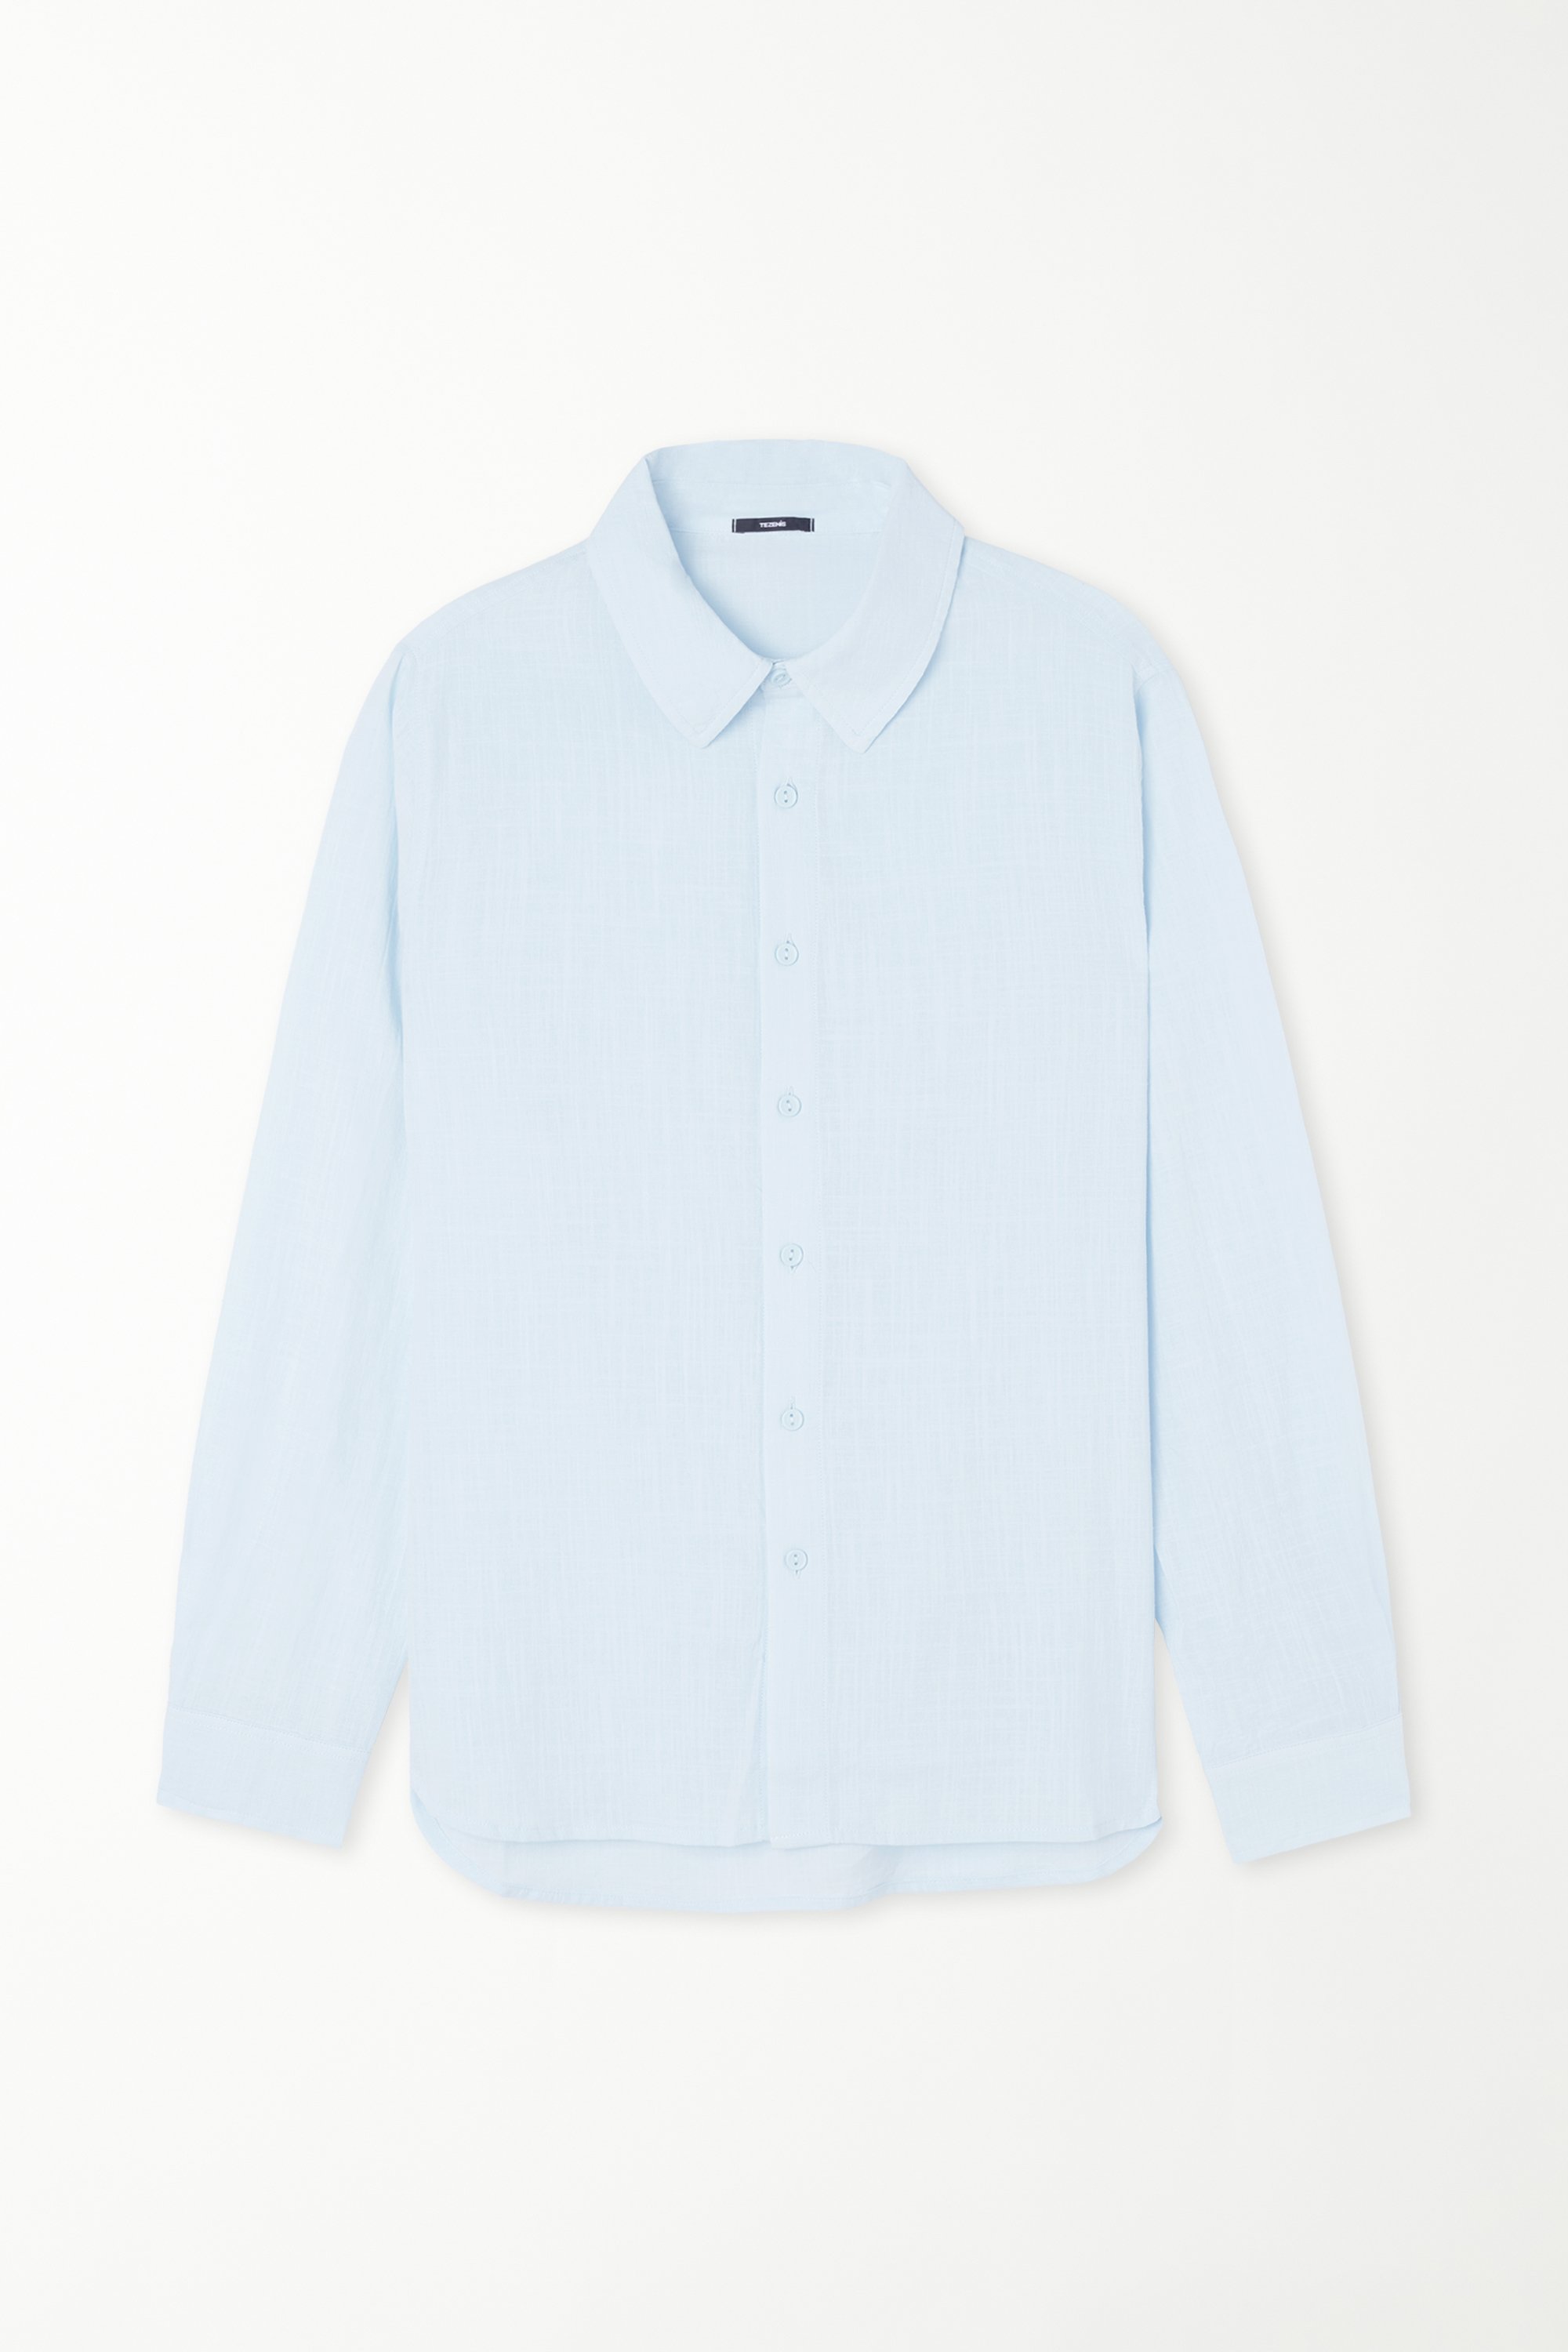 Long Sleeve Shirt in 100% Super Light Cotton